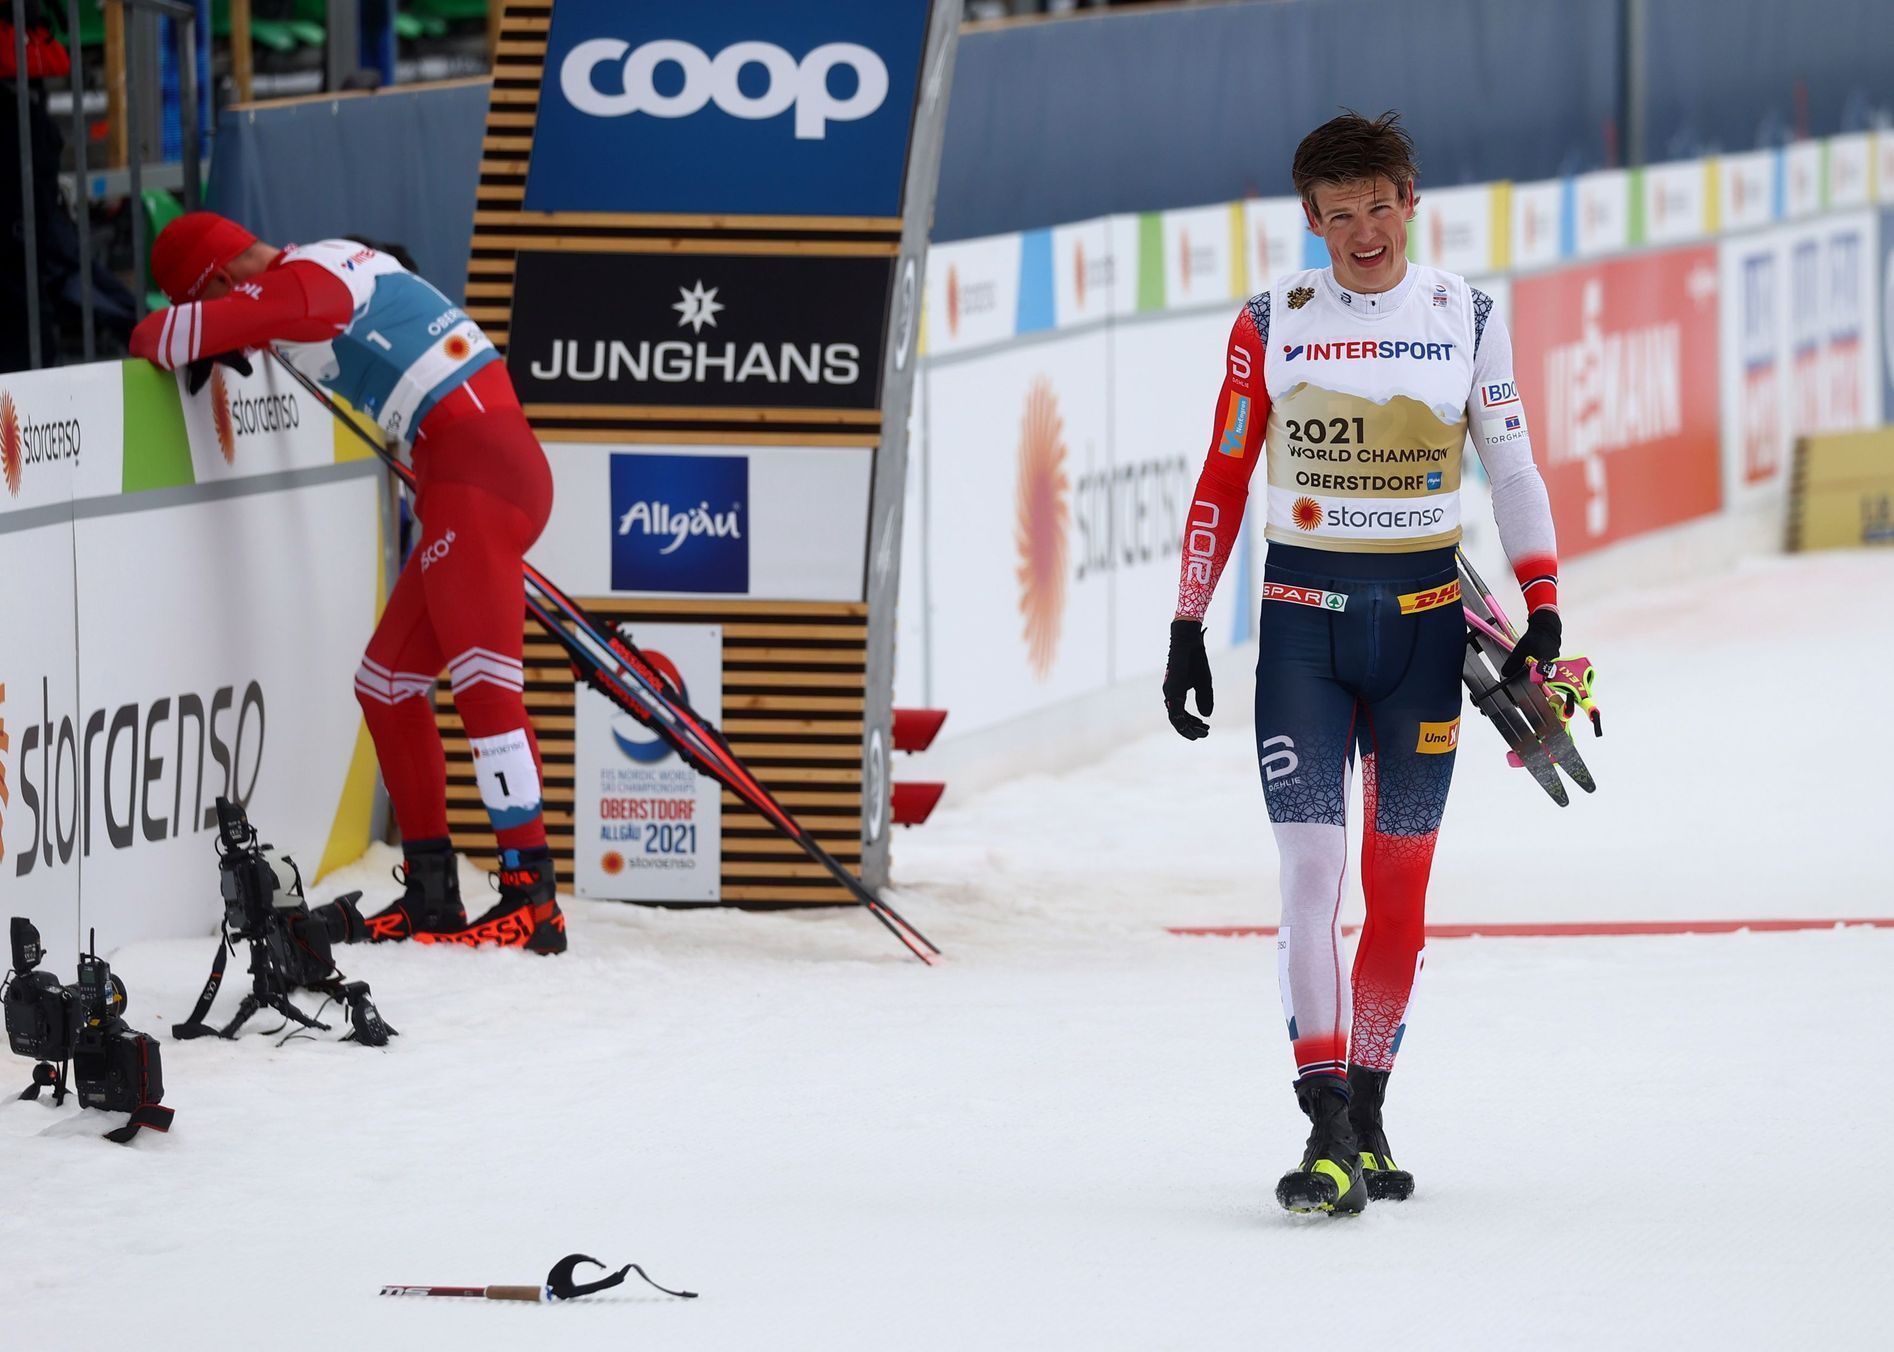 Klaebo a Bolšunov, MS v klasickém lyžování 2021